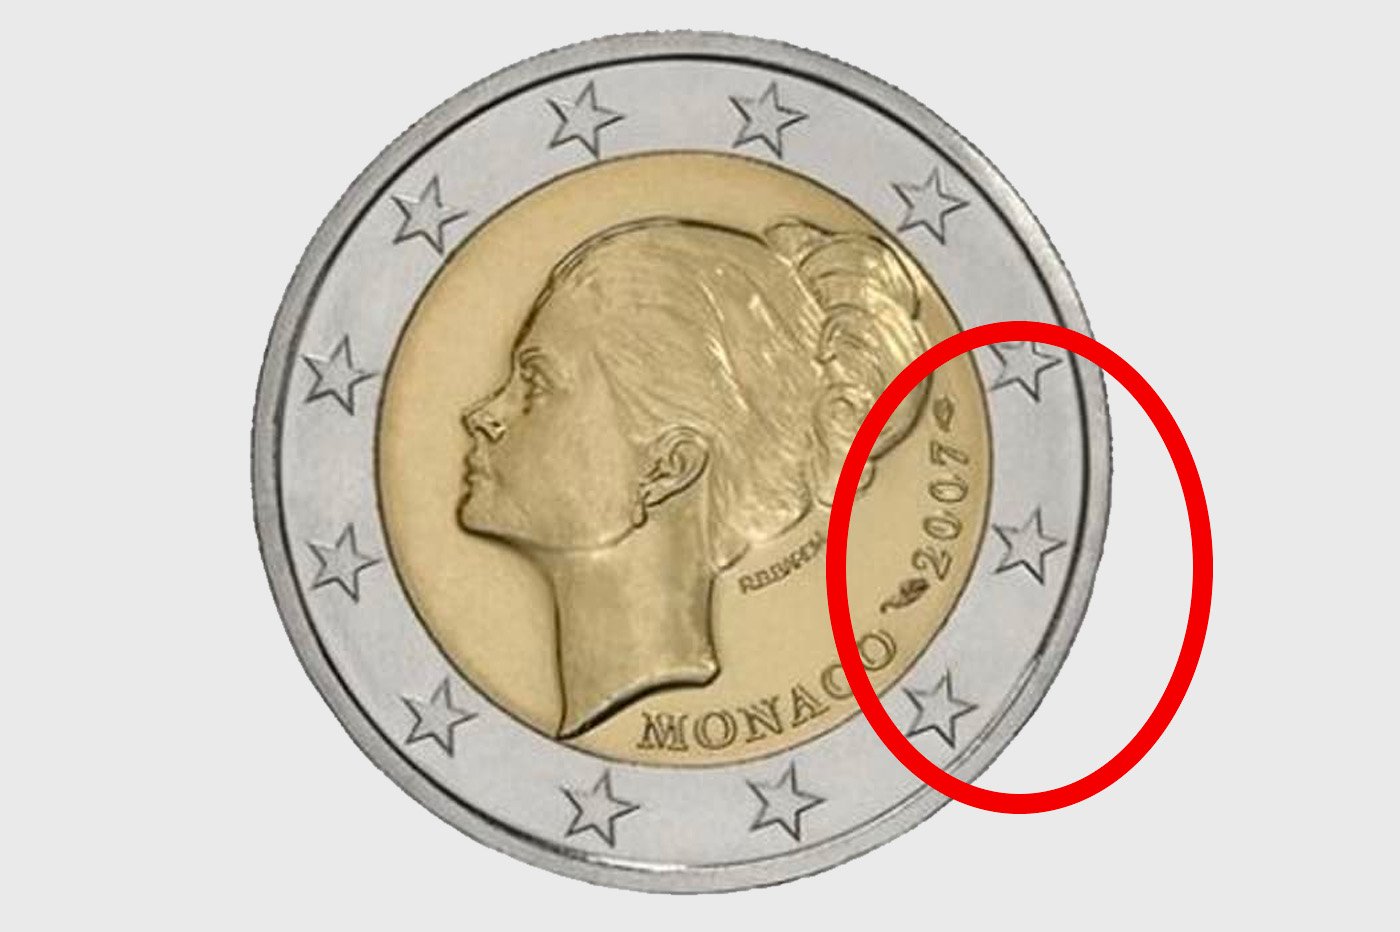 Ces pièces de 1 euro qui valent (très) cher